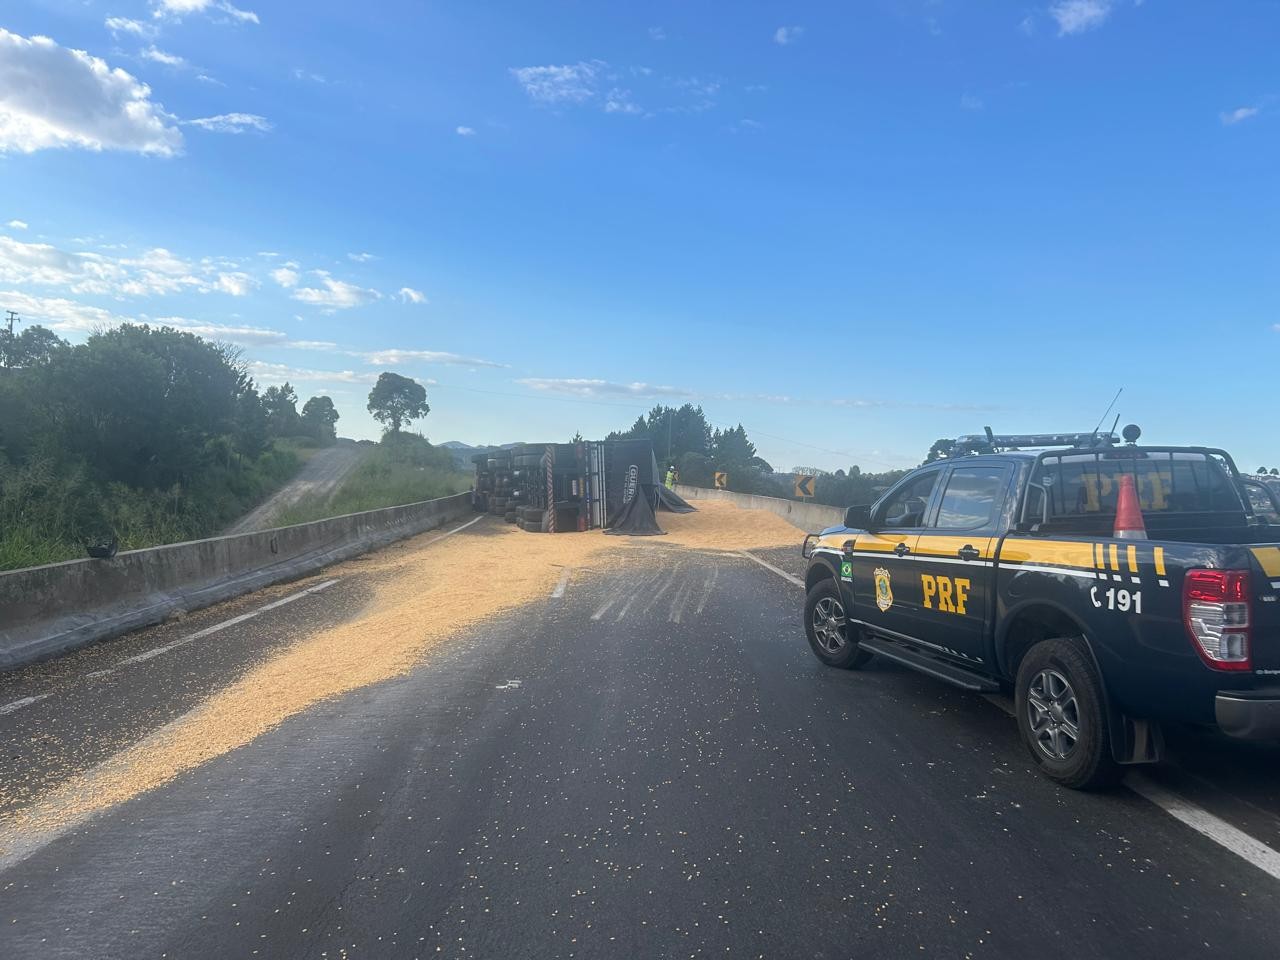 Caminhão carregado de milho tomba e interdita BR-277 na Região Metropolitana de Curitiba